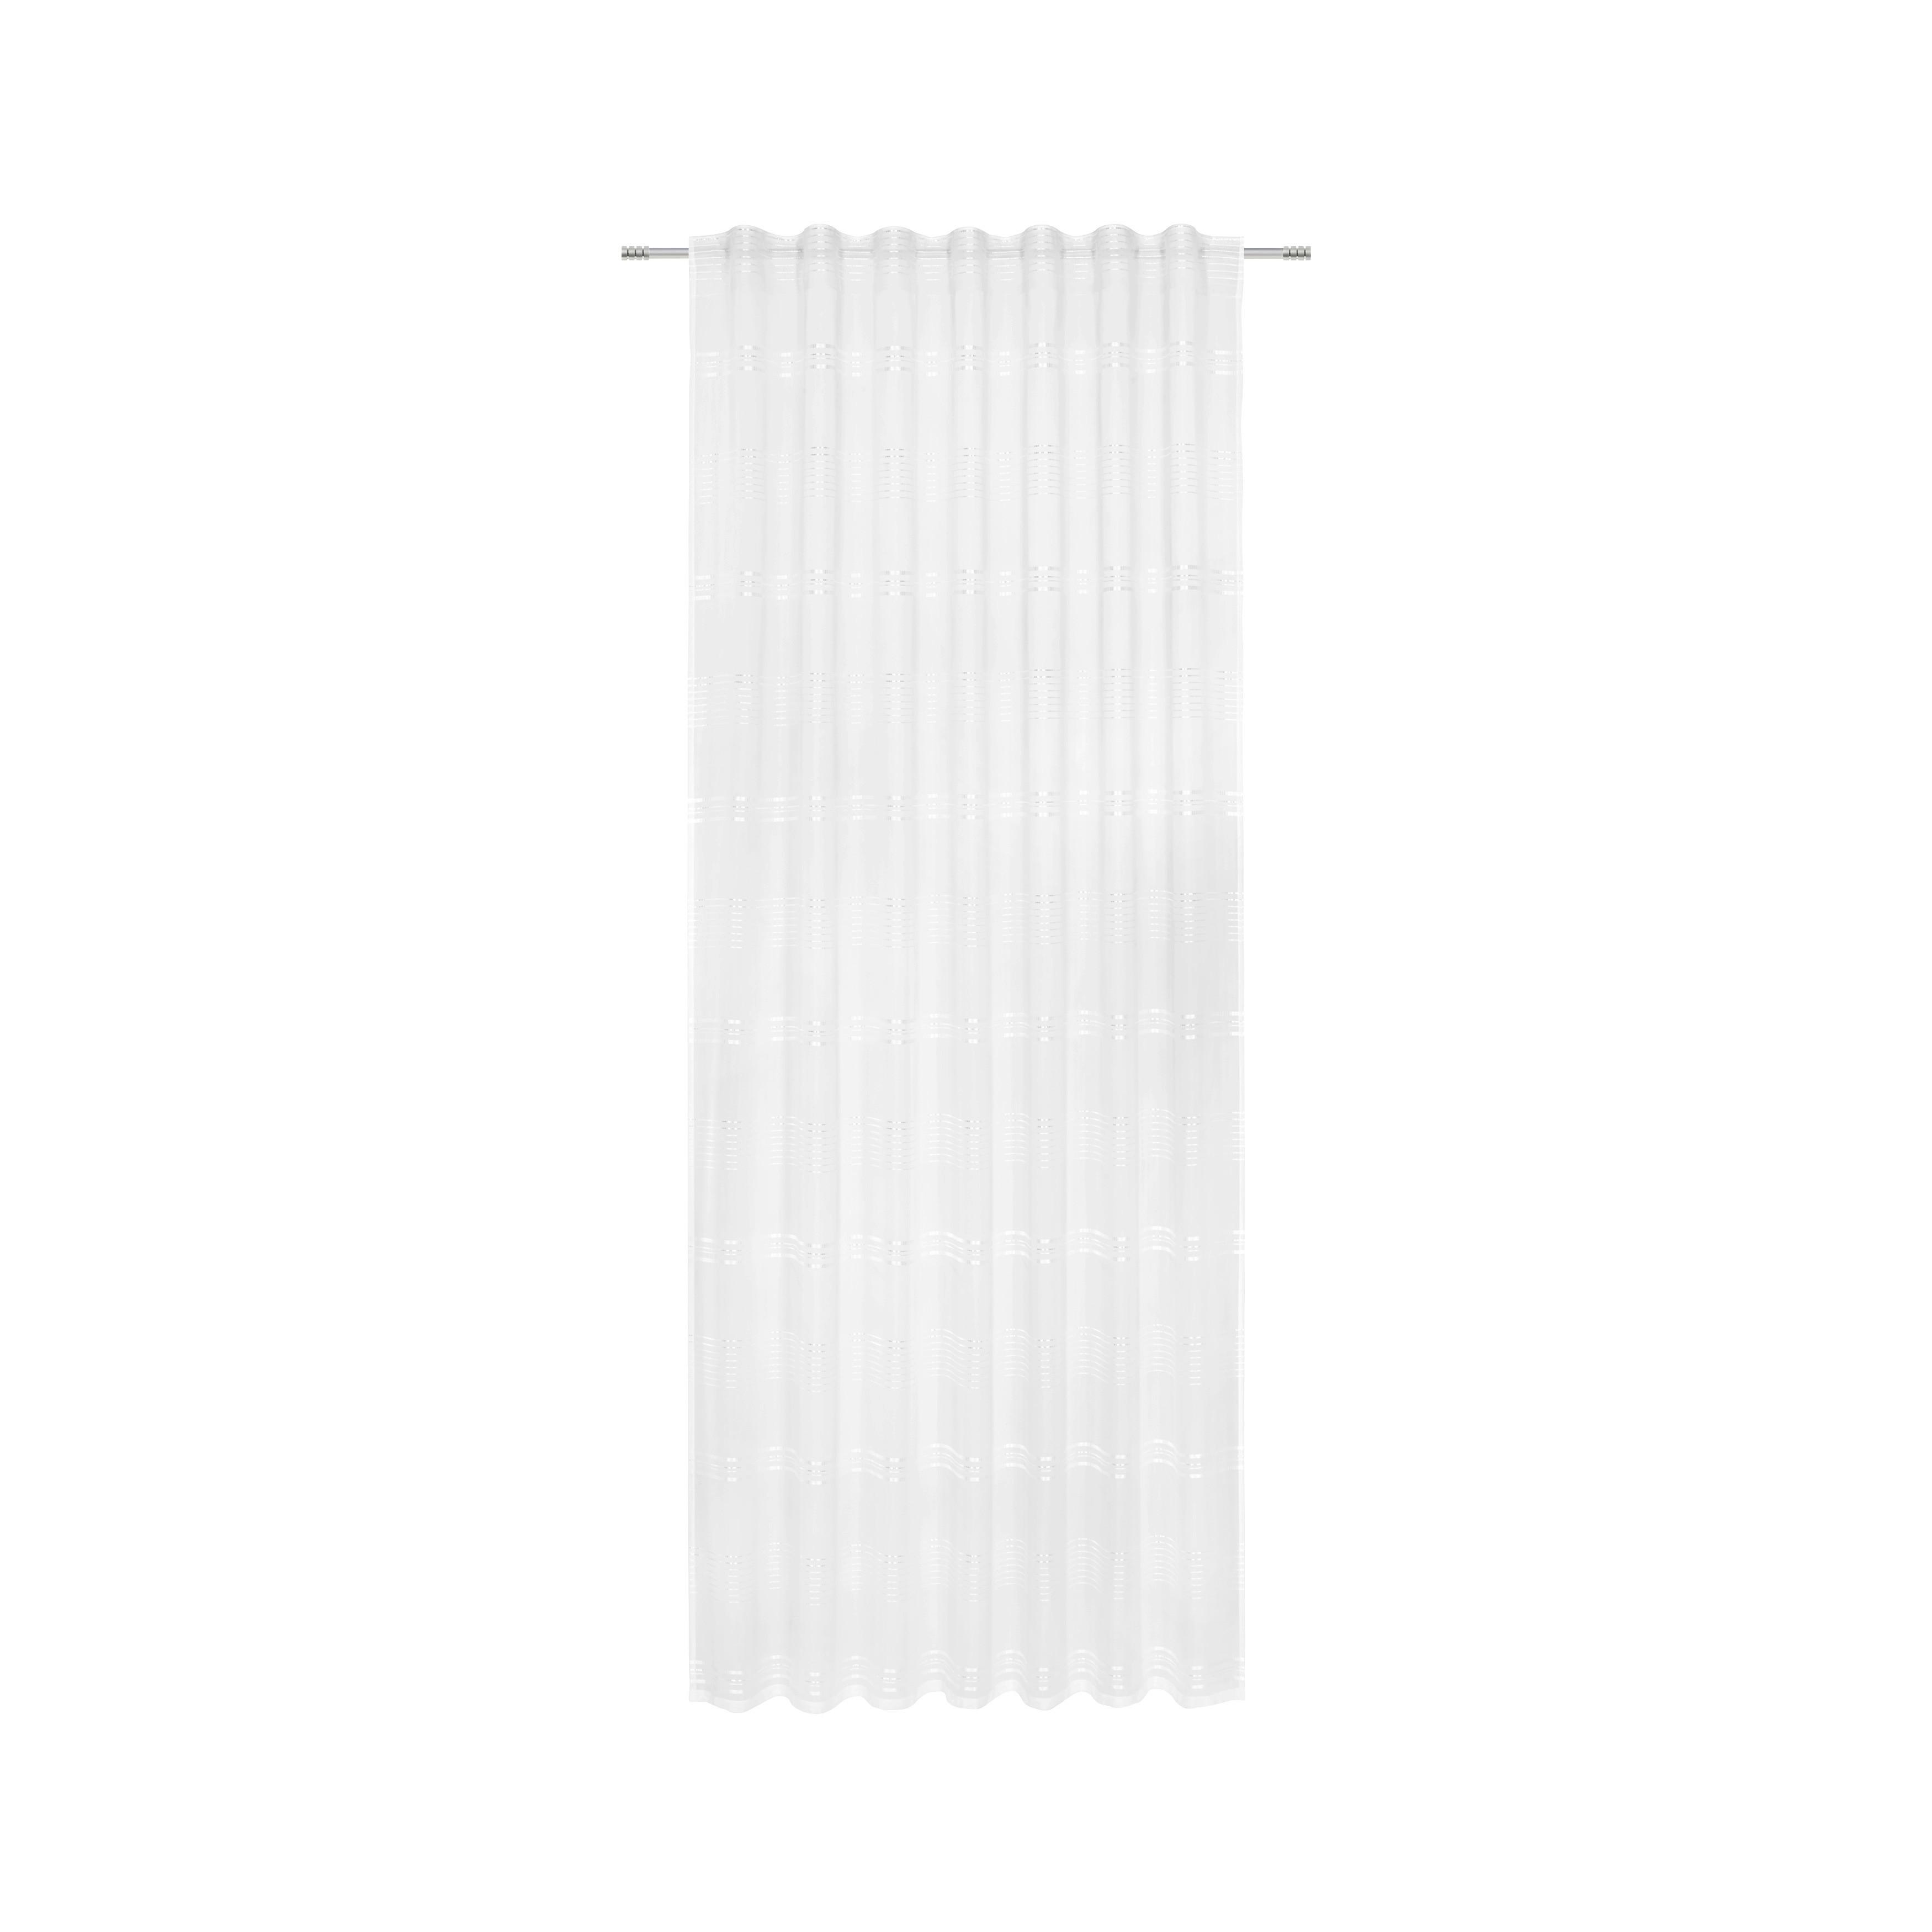 Készfüggöny Louis 140/245 - Fehér, konvencionális, Textil (140/245cm) - Modern Living